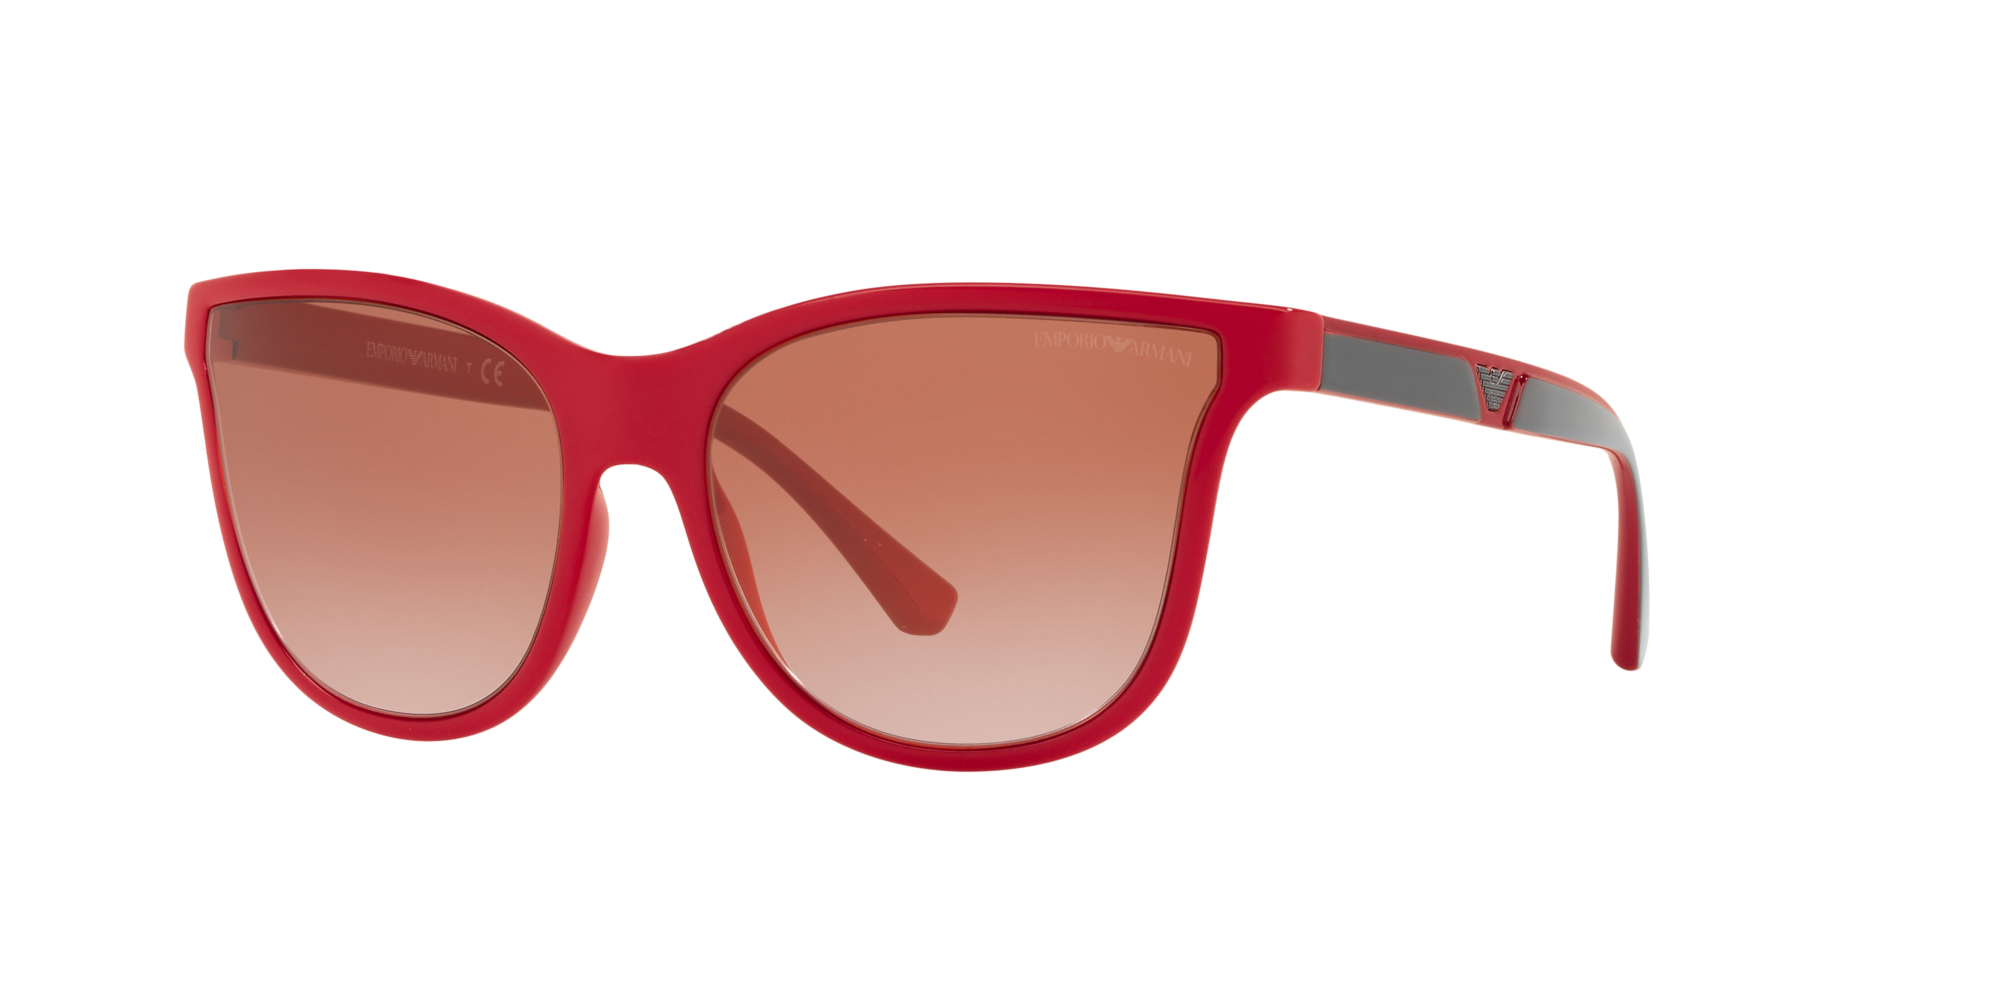 armani red sunglasses